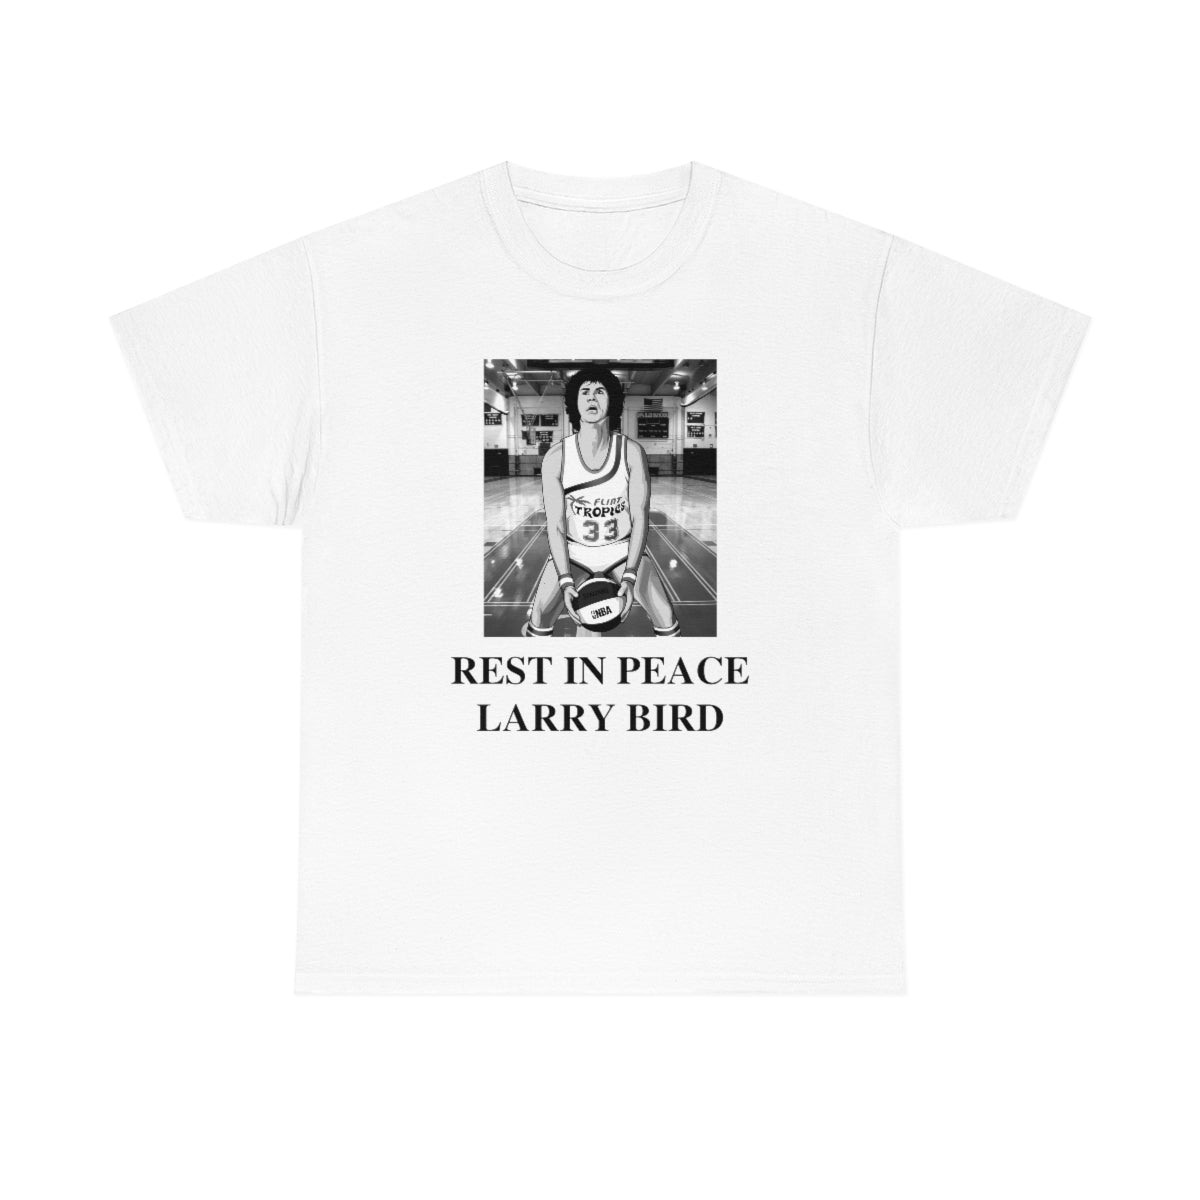 RIP Larry Bird (Jackie Moon Semipro) - Unisex Heavy Cotton Tee